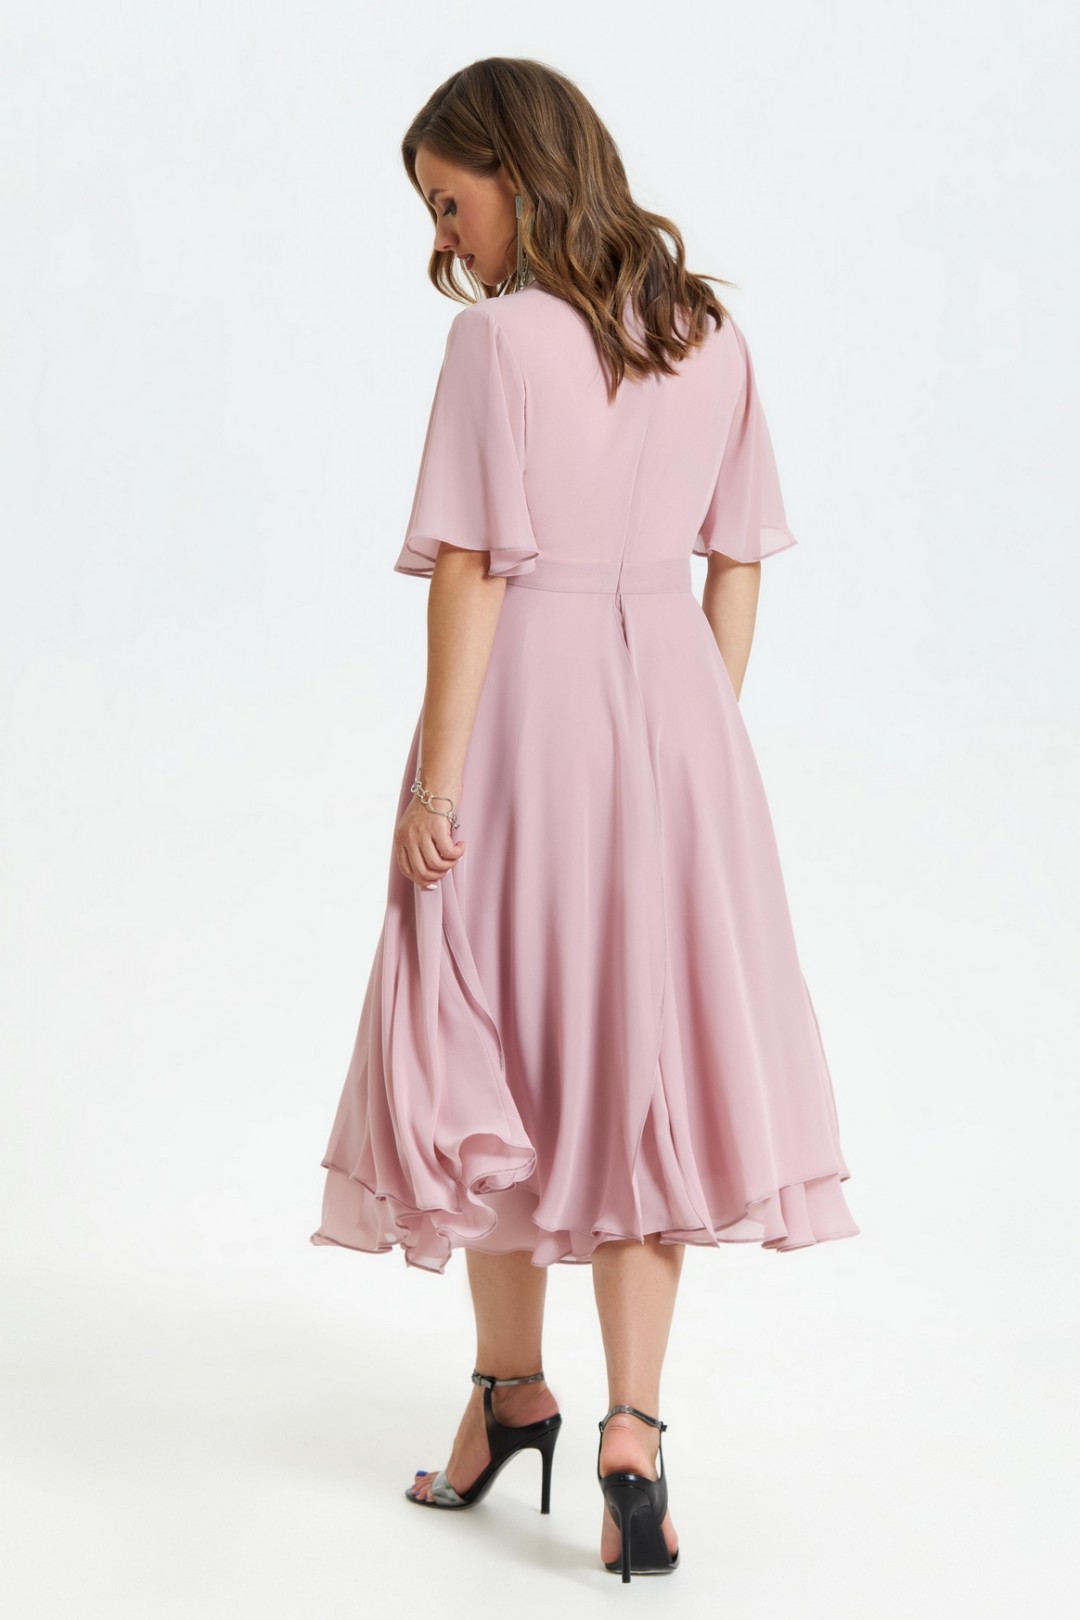 Платье TEZA 1455 пыльно-розовый